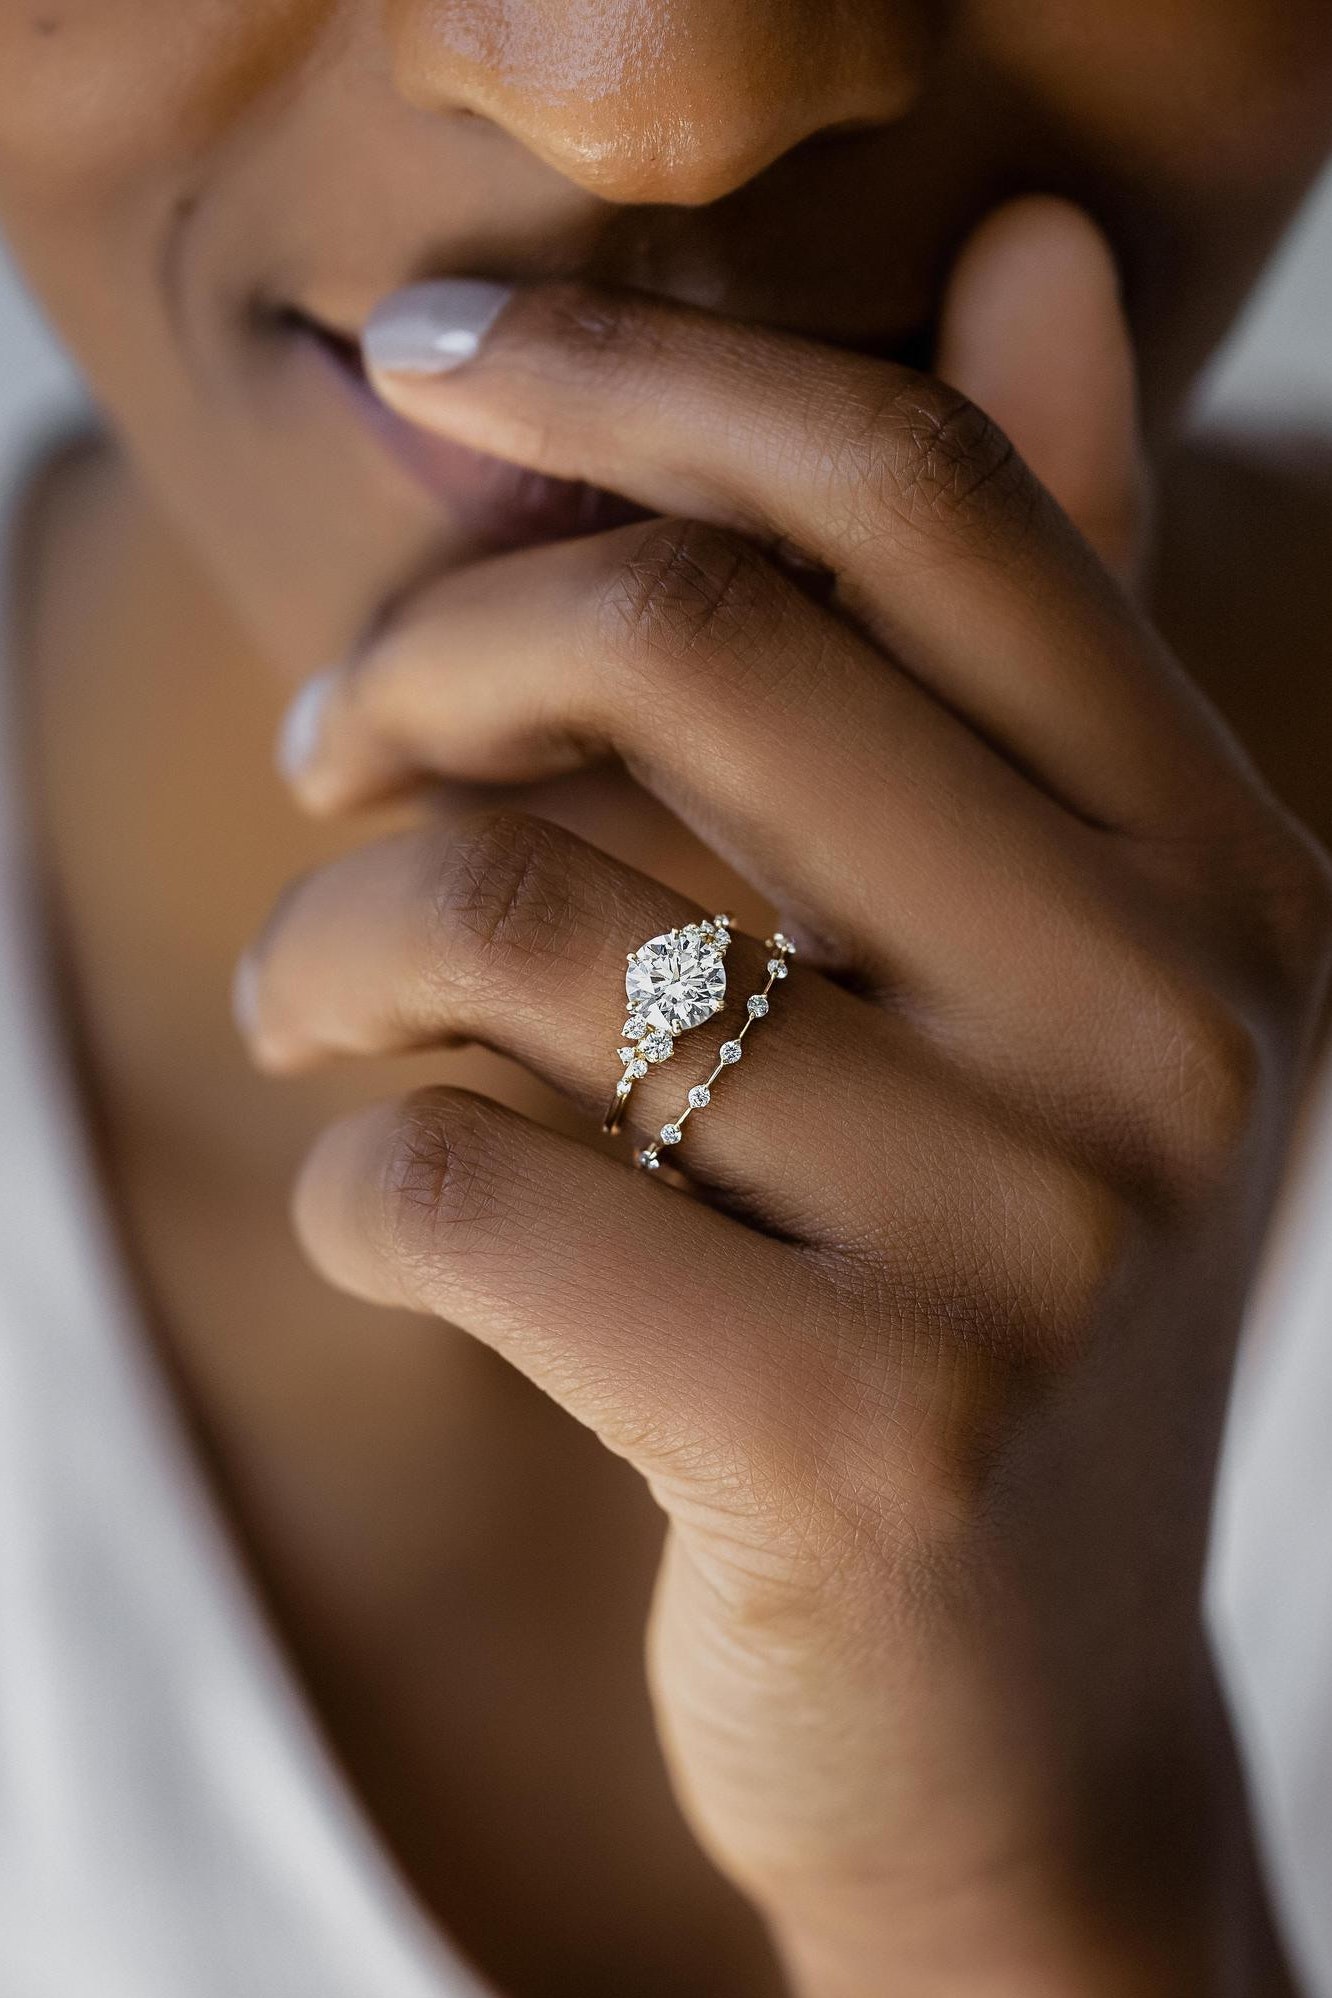 Scegliere l’anello perfetto per la proposta di matrimonio: consigli e suggerimenti